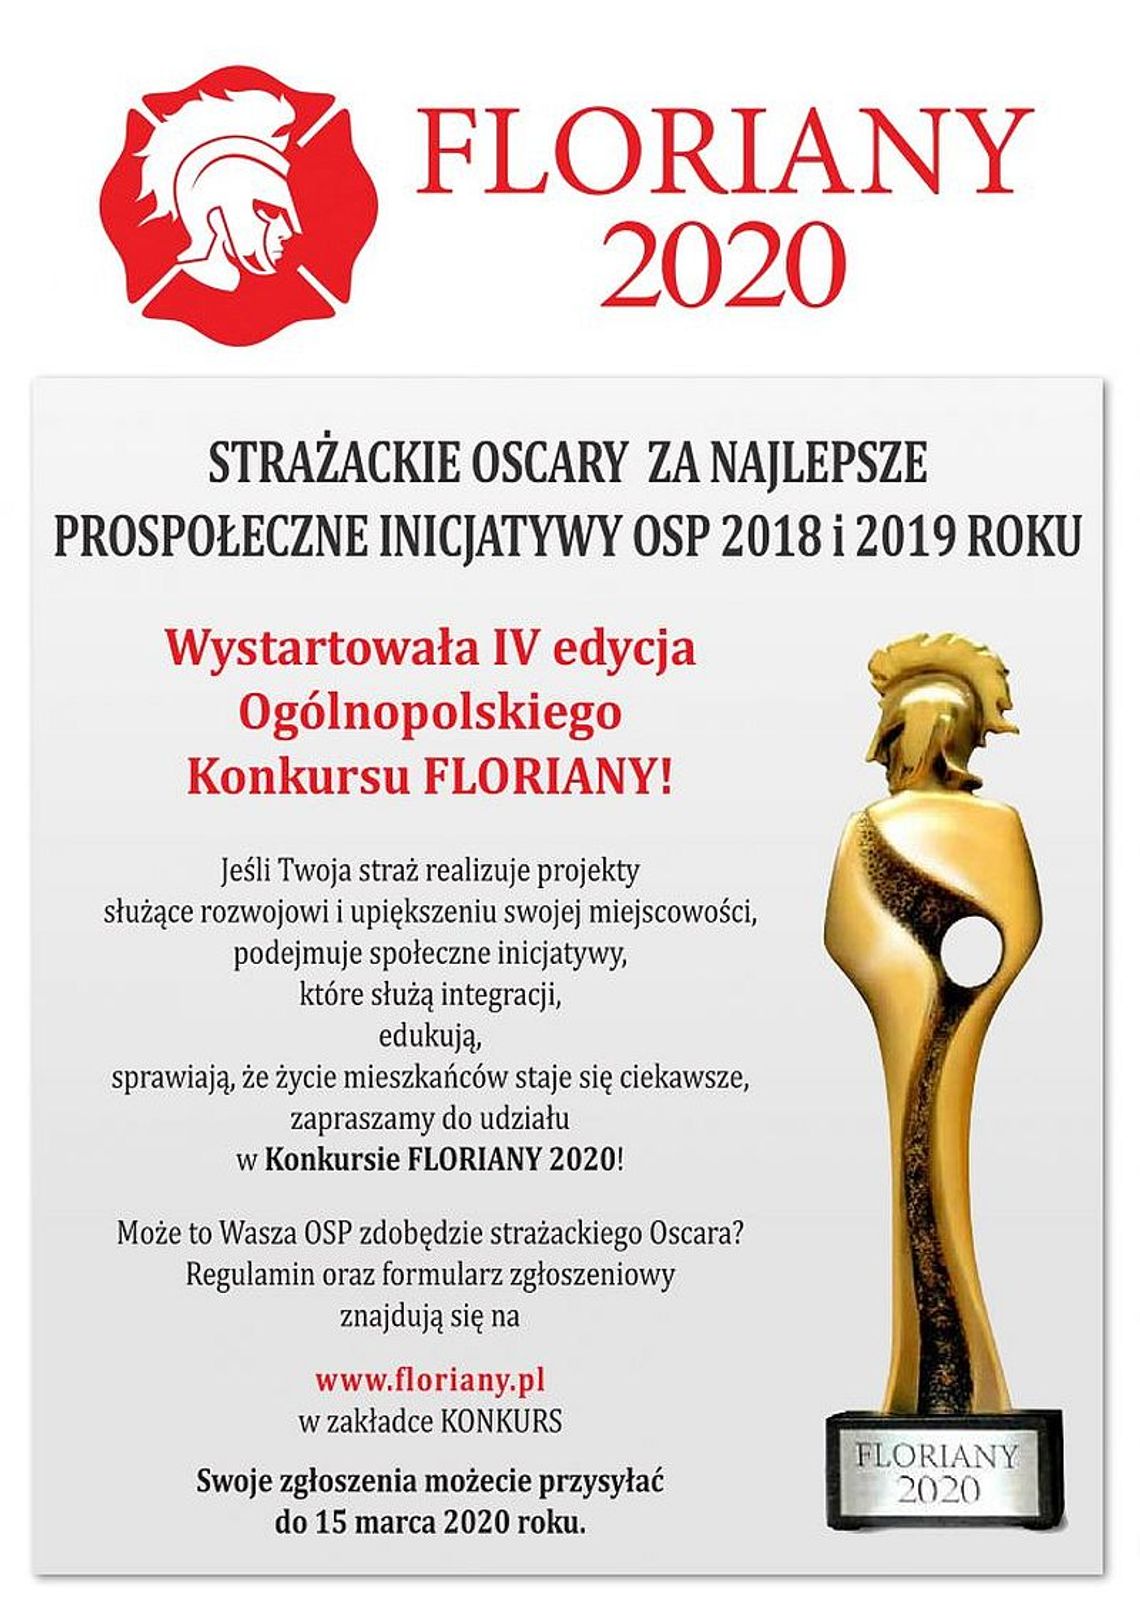 Floriany 2020 ‒ wystartowała 4. edycja ogólnopolskiego konkursu dla strażaków ochotników